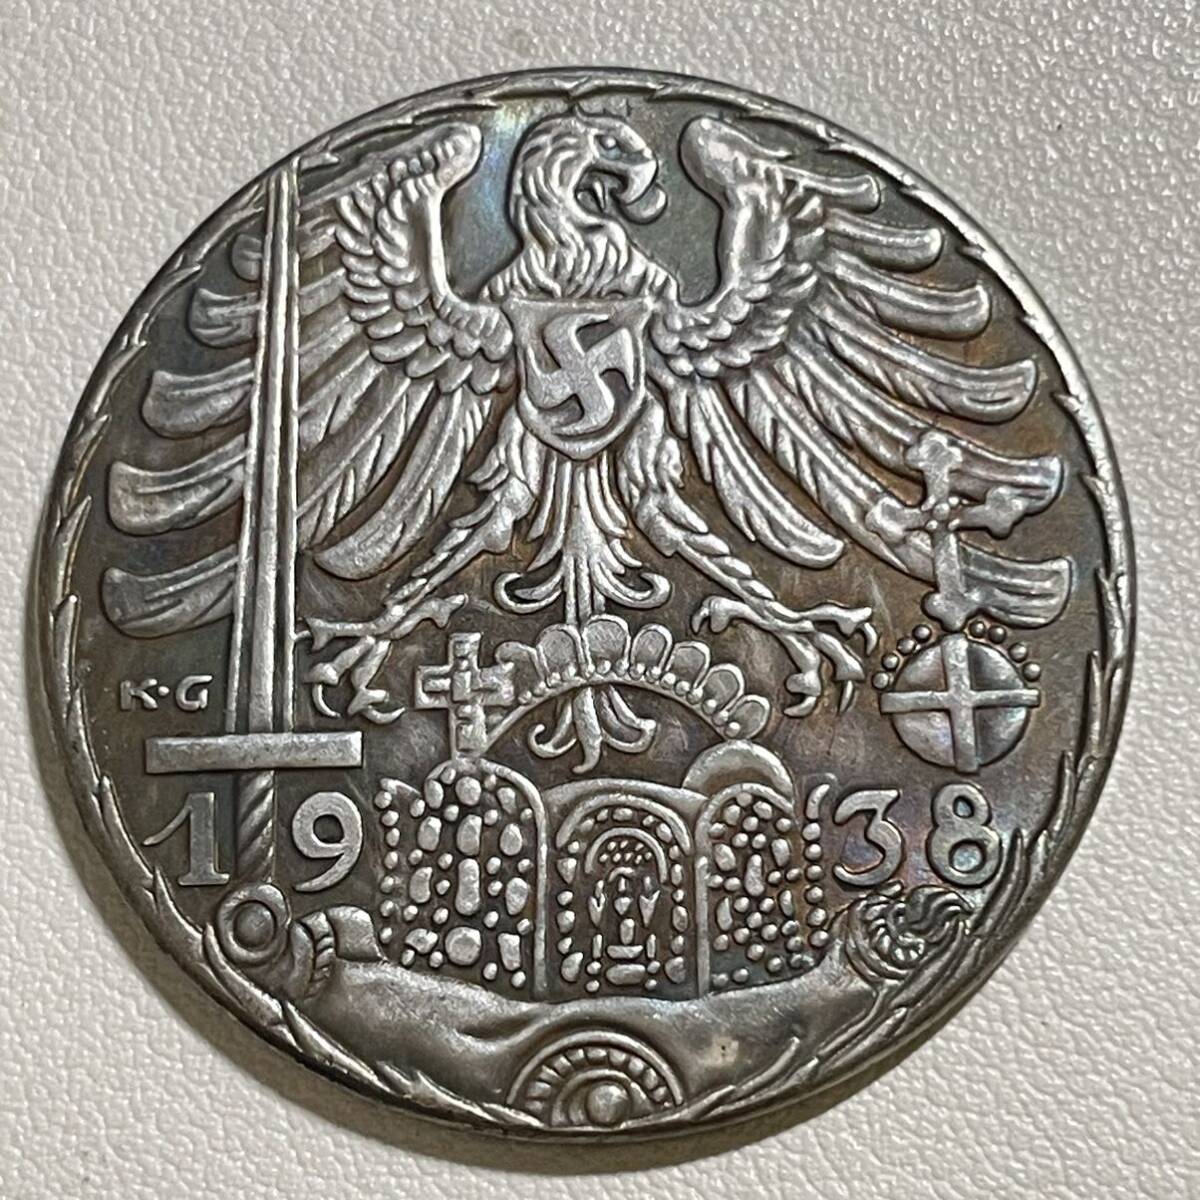 ドイツ 硬貨 古銭 ニュルンベルクの街 1938年 オーストリア併合 剣 帝国の鷲 紋章 クラウン 花輪 コイン 重23.80g_画像1